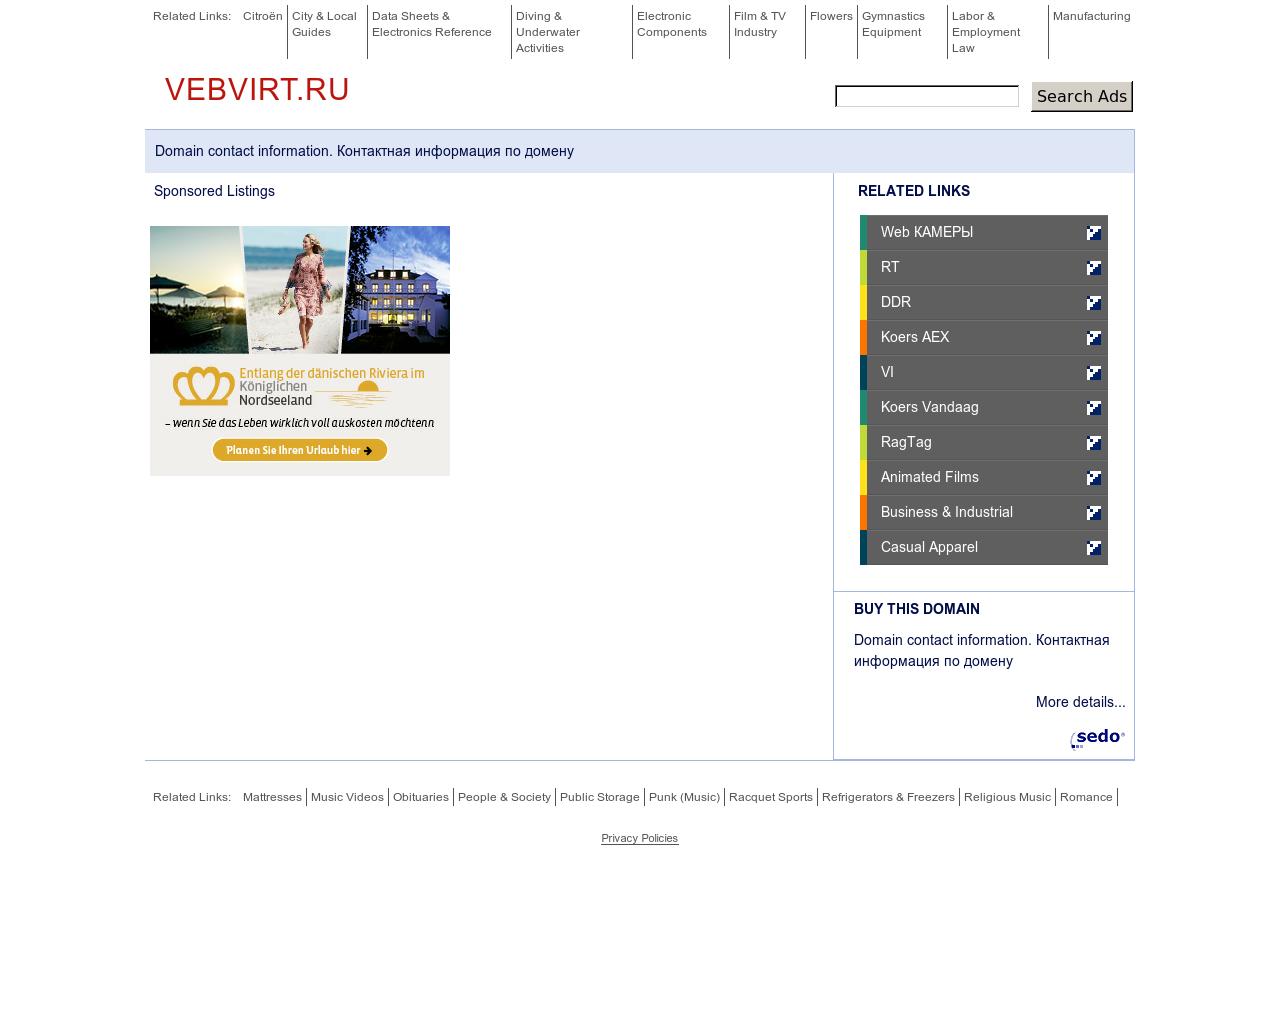 Изображение сайта vebvirt.ru в разрешении 1280x1024